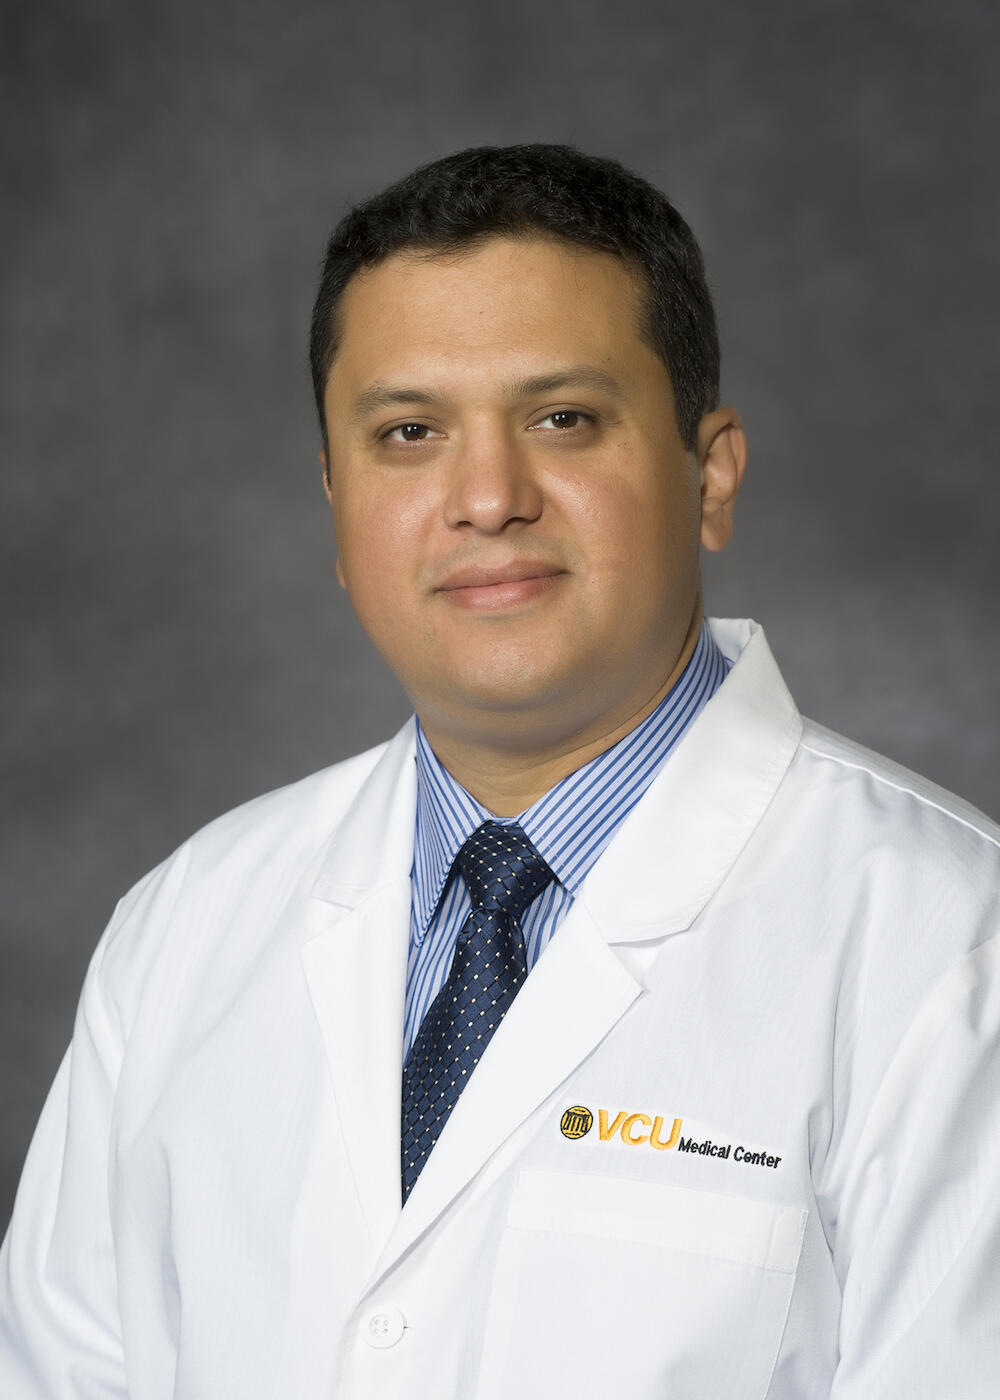 Victor H. Gonzalez-Montoya, M.D.
